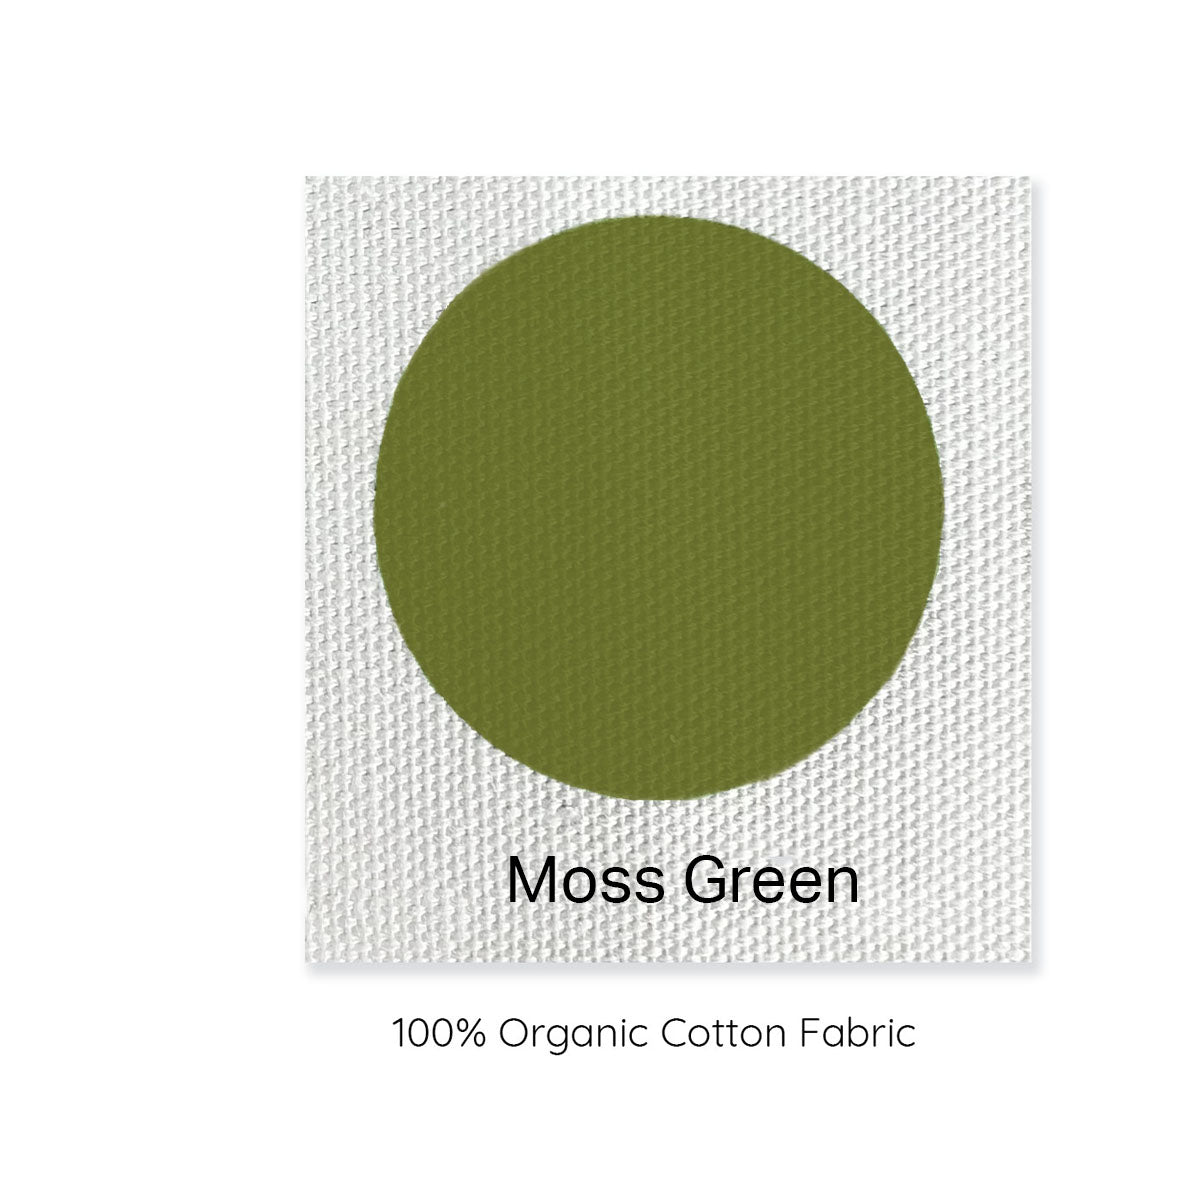 modeabode moss green 100% organic cotton sample